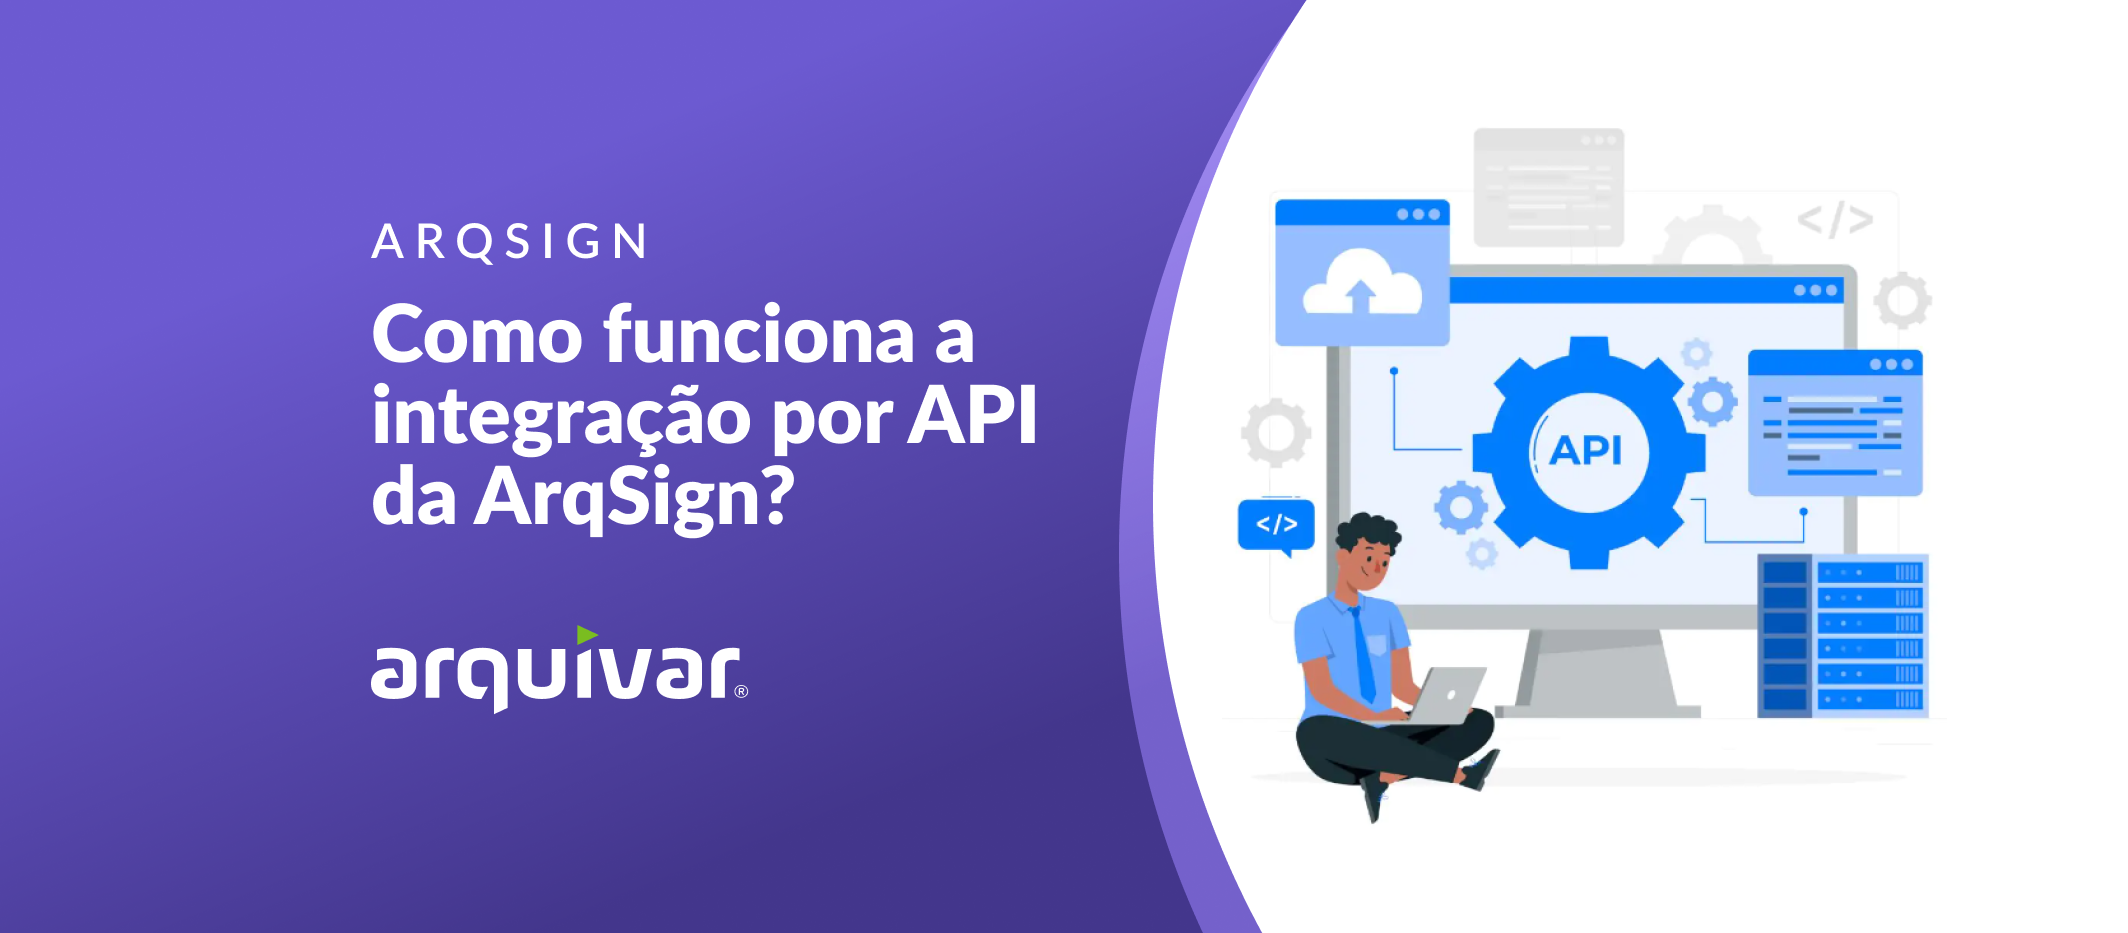 Imagem de capa de artigo com o tema: “Como funciona a integração por API da ArqSign?”